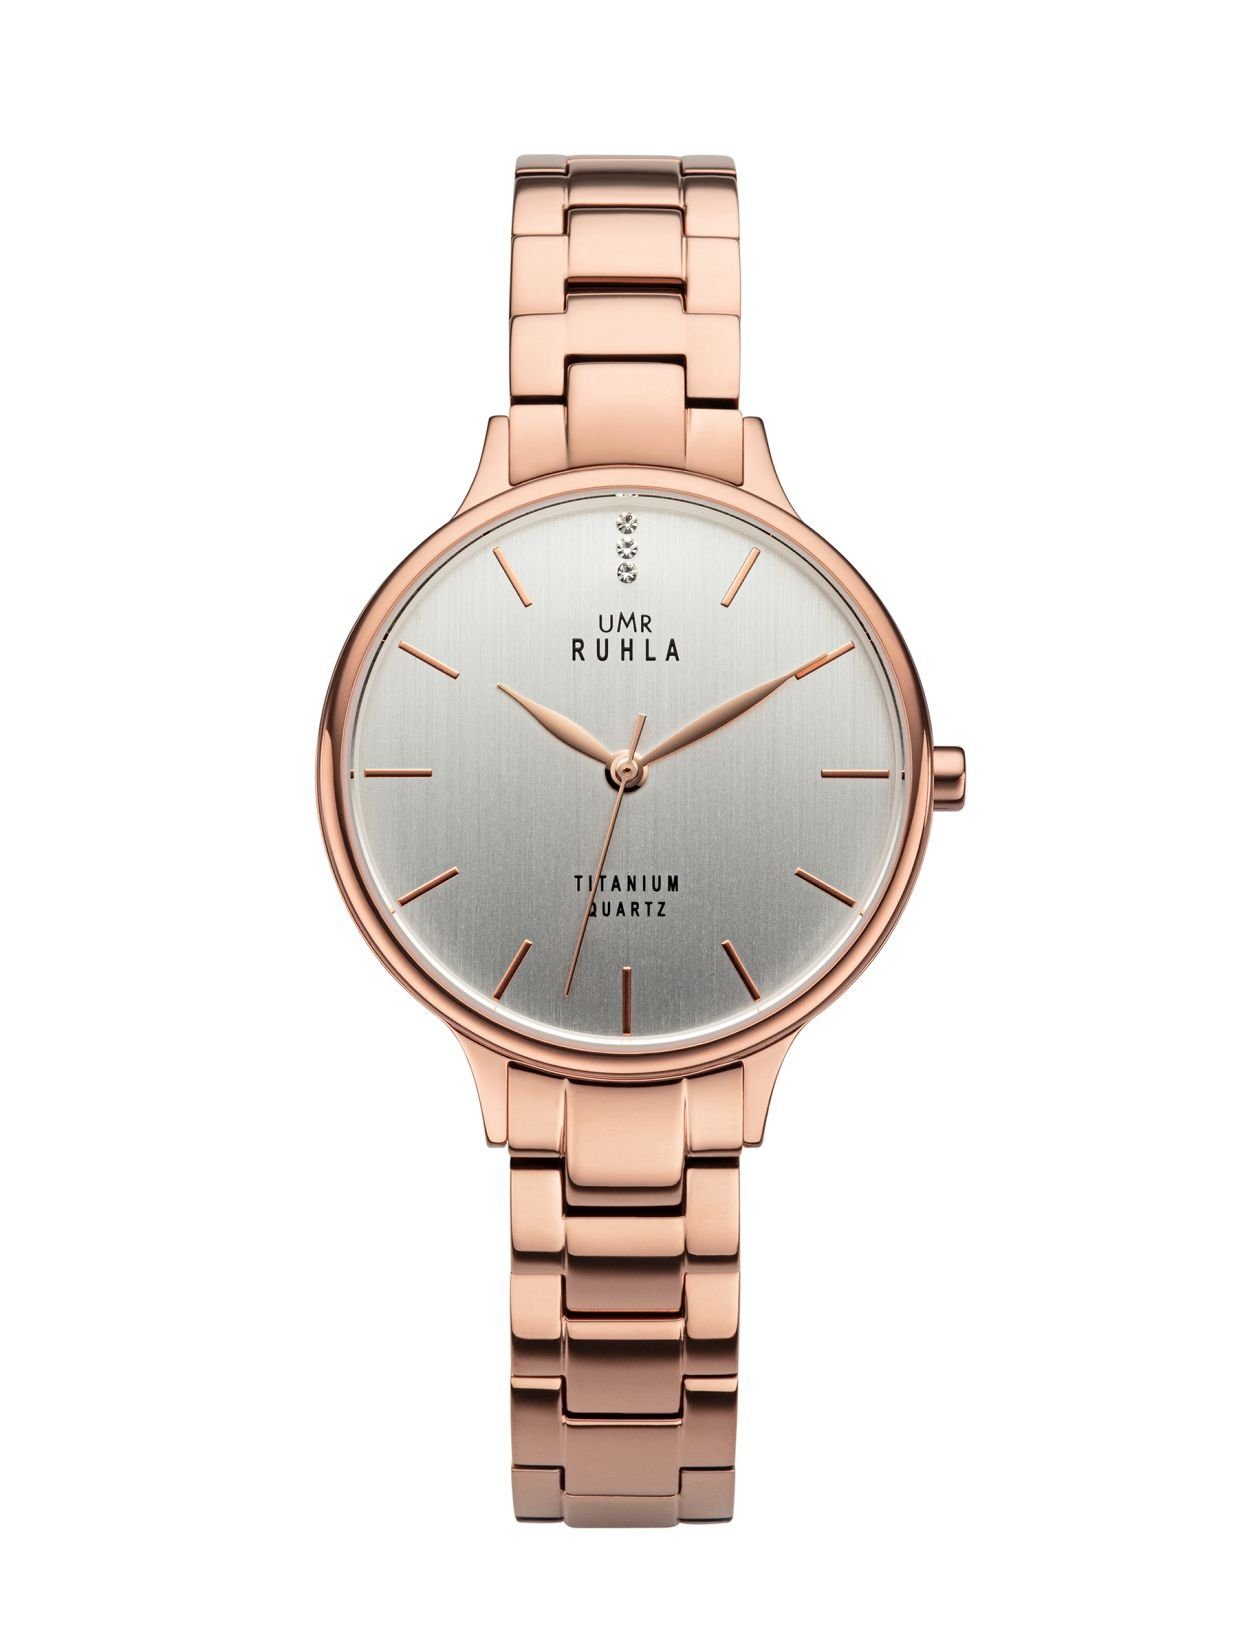 UMR Ruhla Quarzuhr Uhren Manufaktur Ruhla - Armbanduhr Style Titan rosé